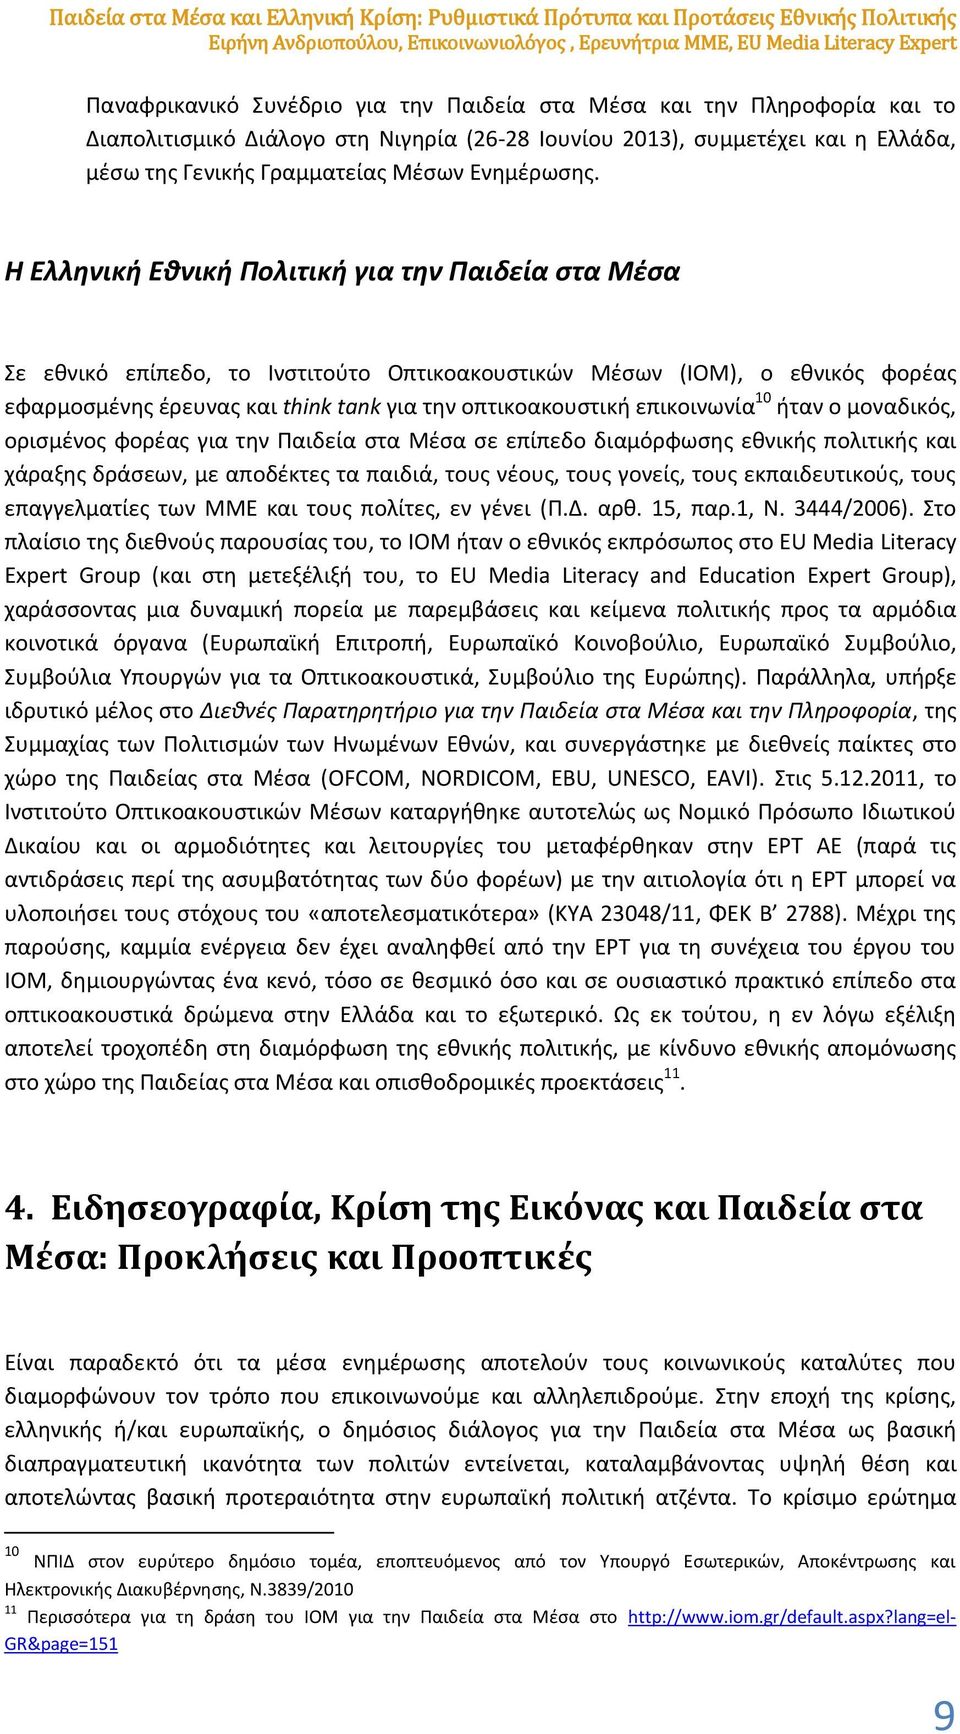 Η Ελληνική Eθνική Πολιτική για την Παιδεία στα Μέσα Σε εθνικό επίπεδο, το Ινστιτούτο Οπτικοακουστικών Μέσων (ΙΟΜ), ο εθνικός φορέας εφαρμοσμένης έρευνας και think tank για την οπτικοακουστική